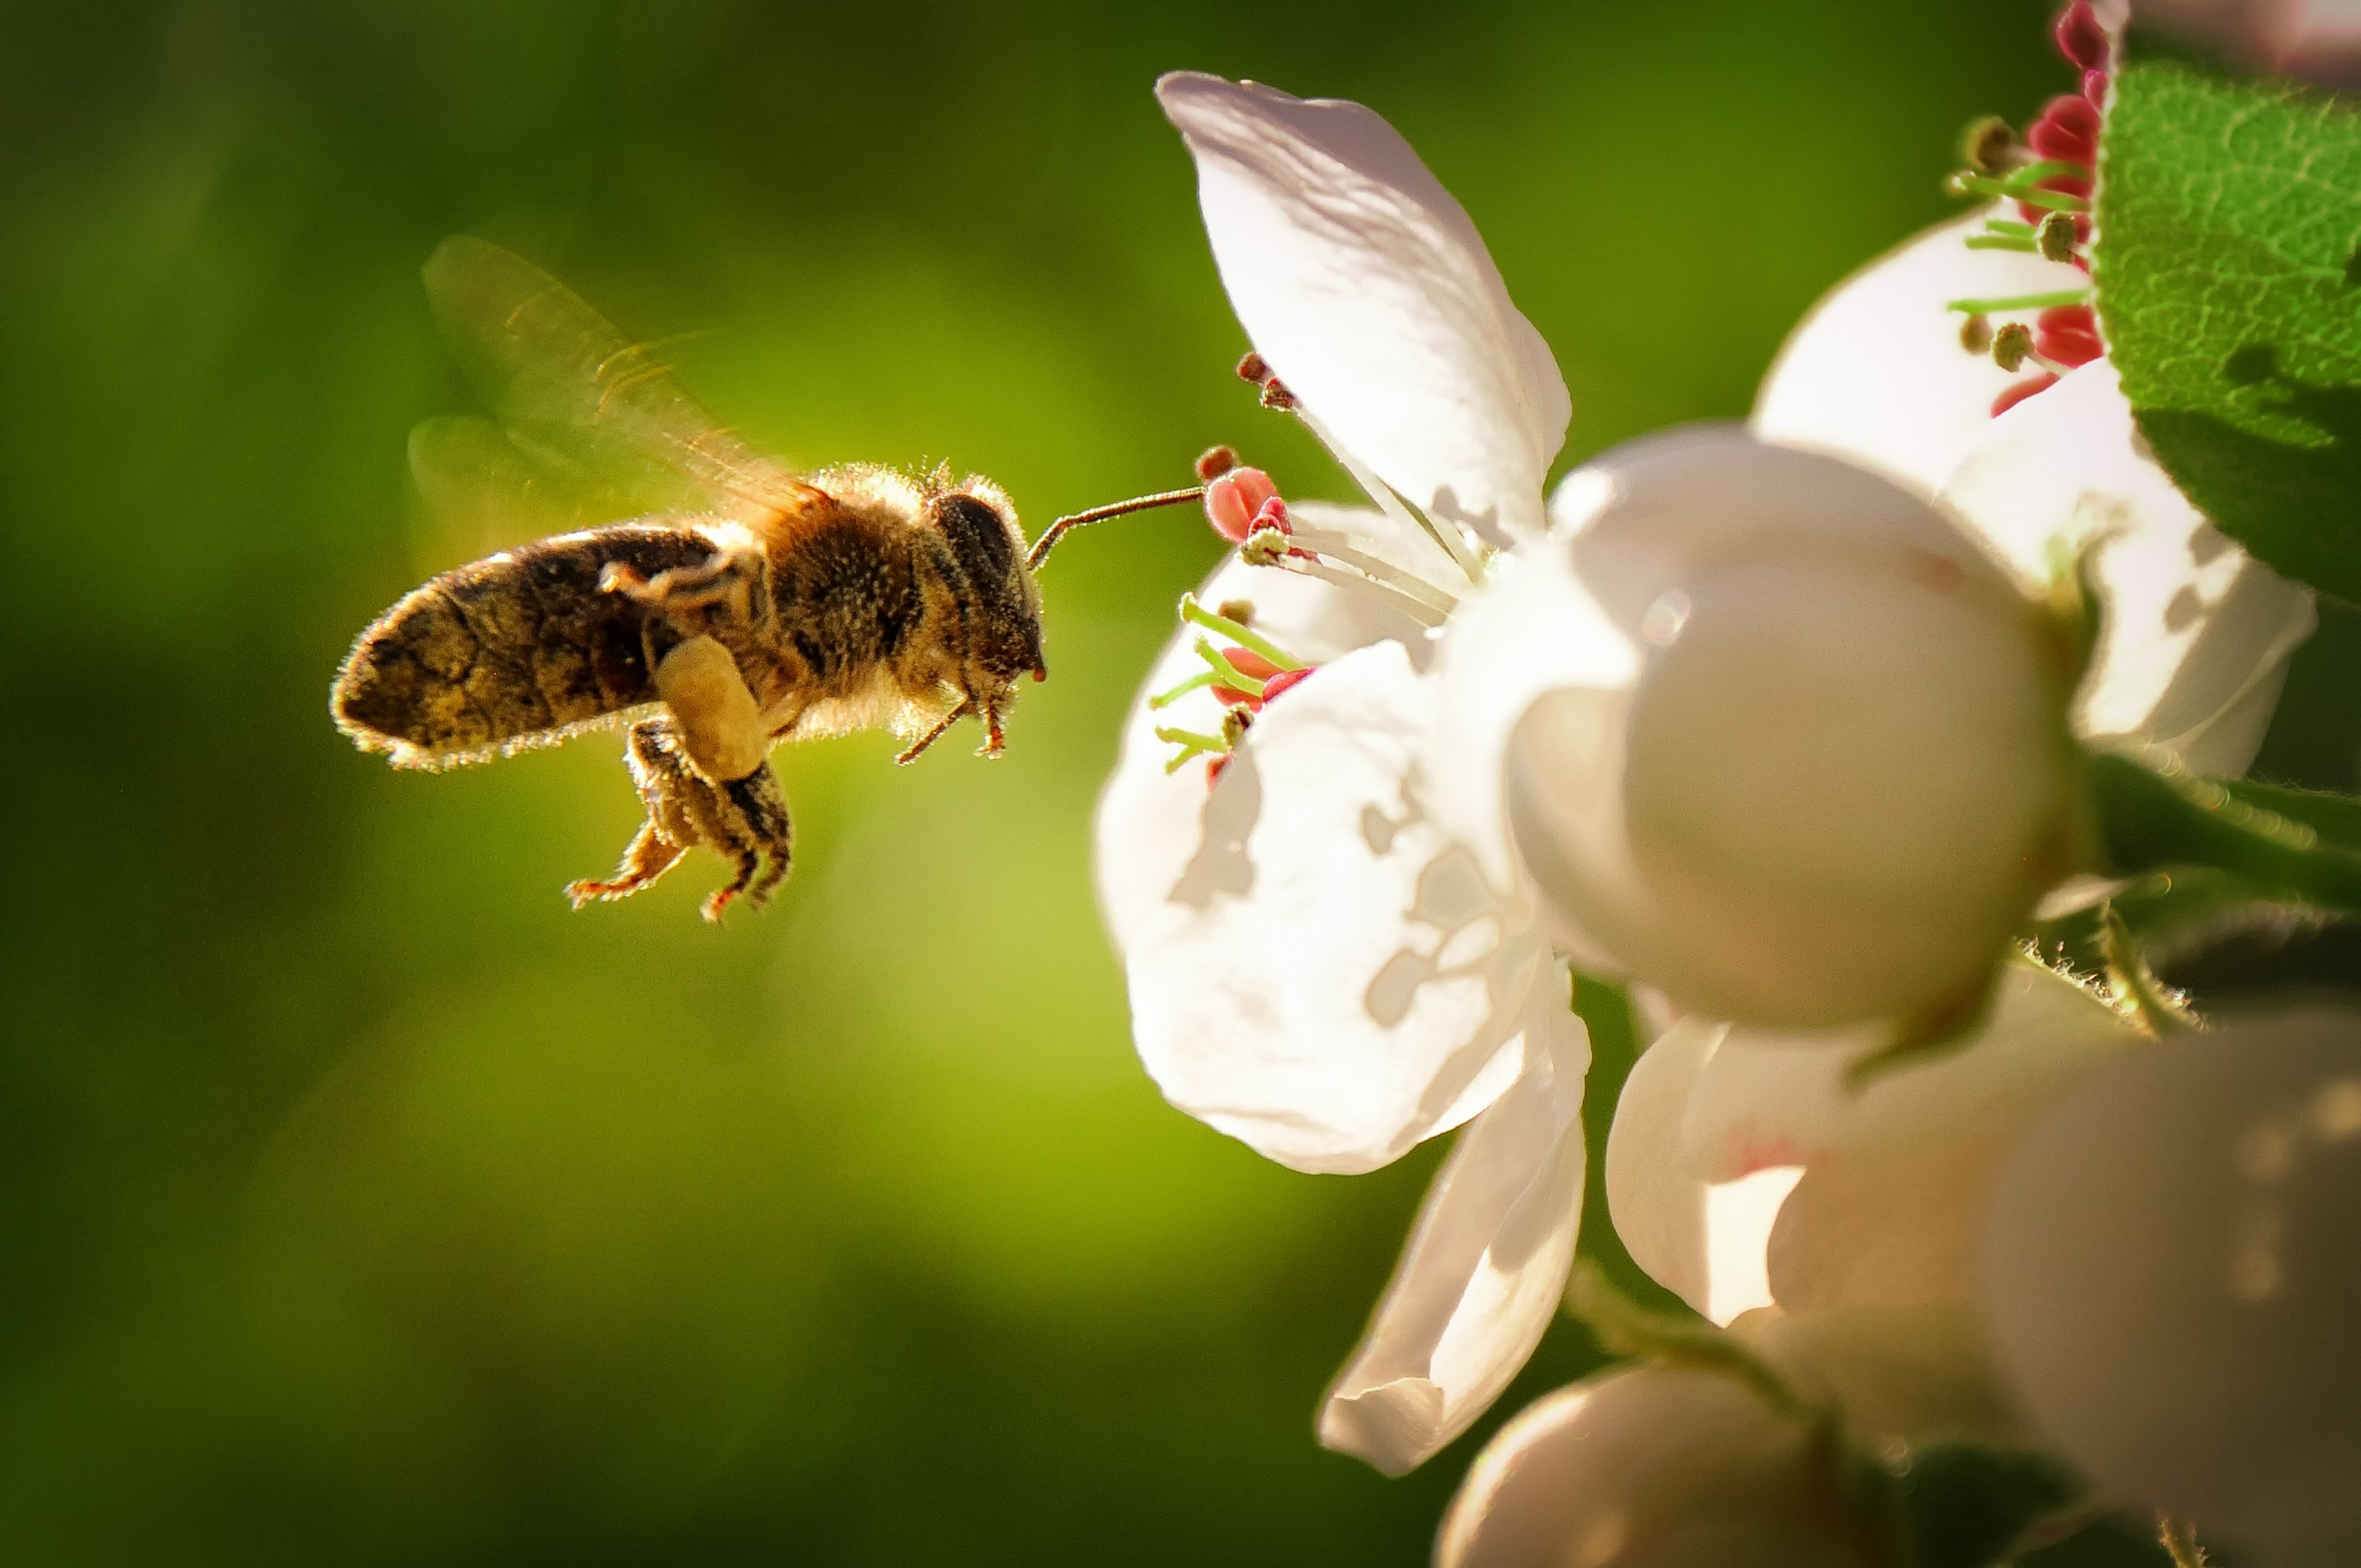 Una mólecula del veneno de la abeja destruye el cáncer de mama